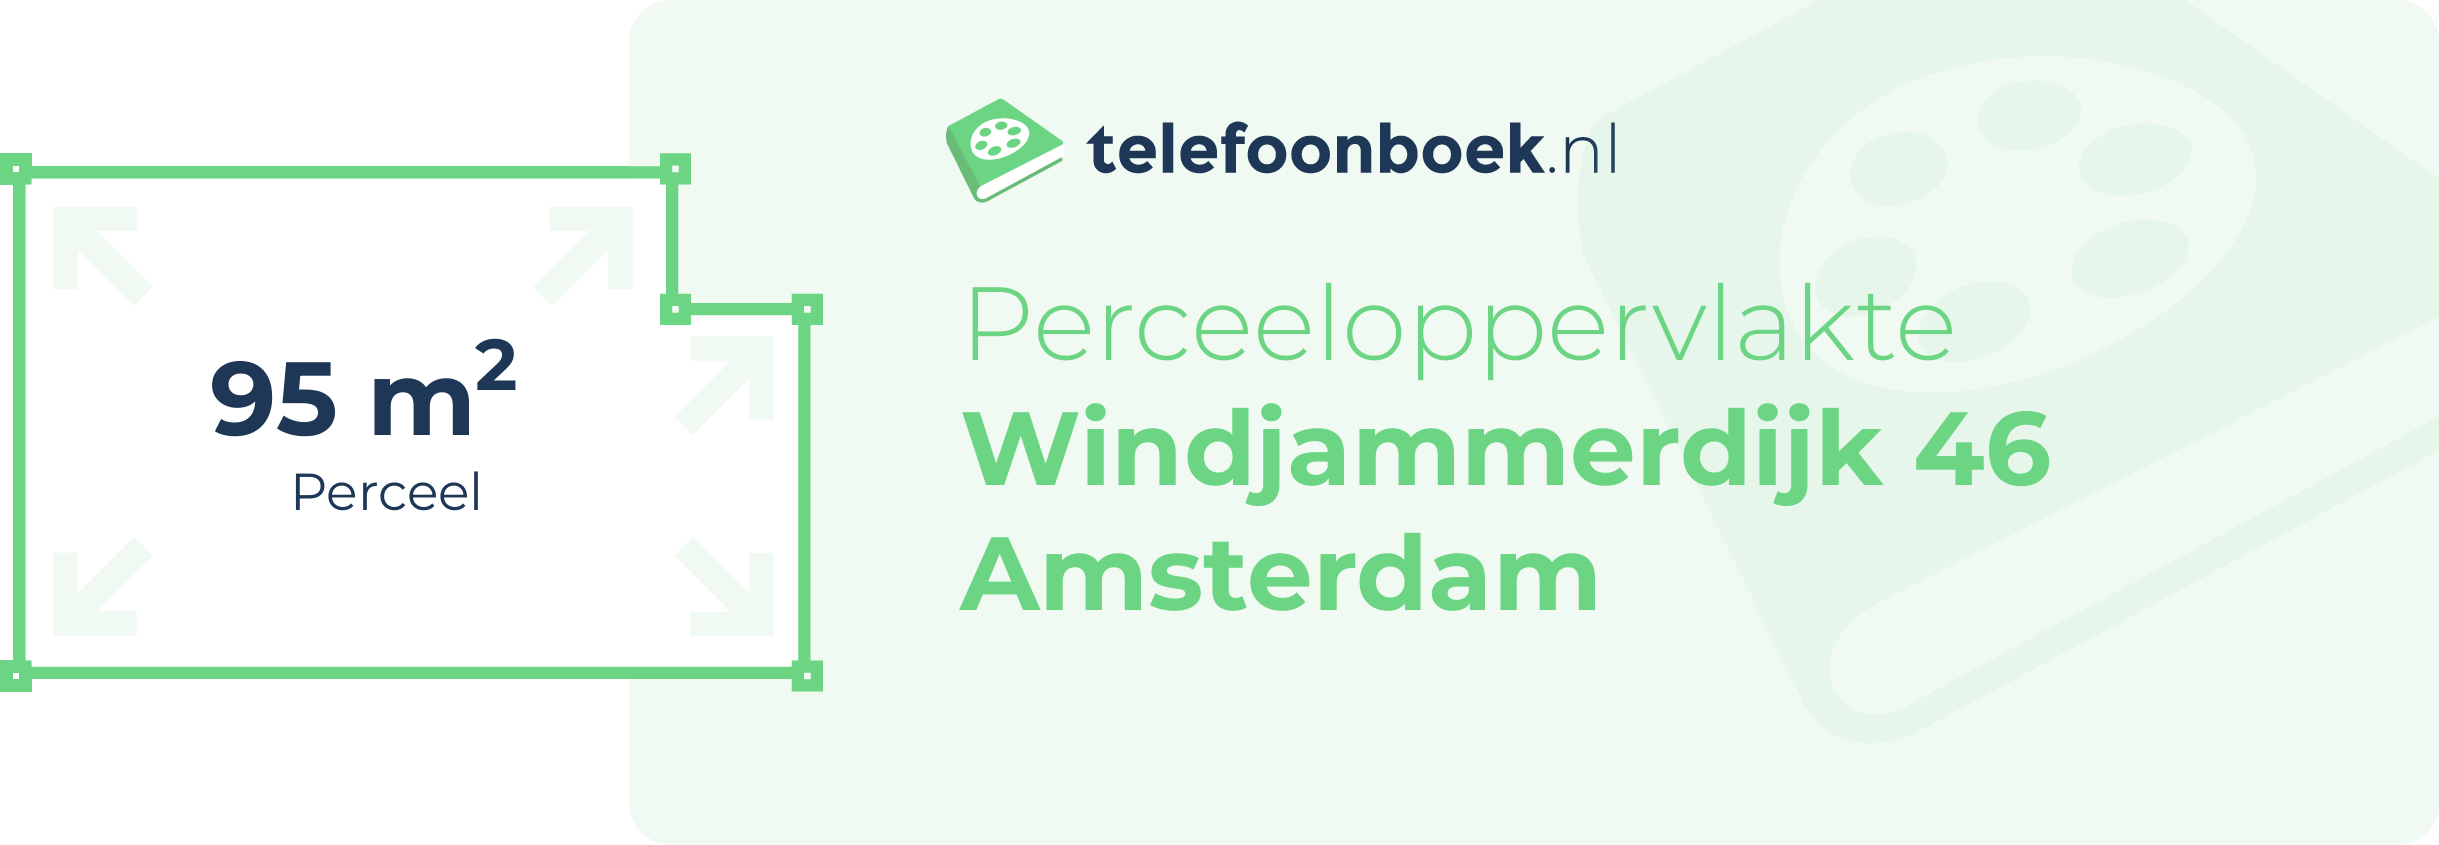 Perceeloppervlakte Windjammerdijk 46 Amsterdam